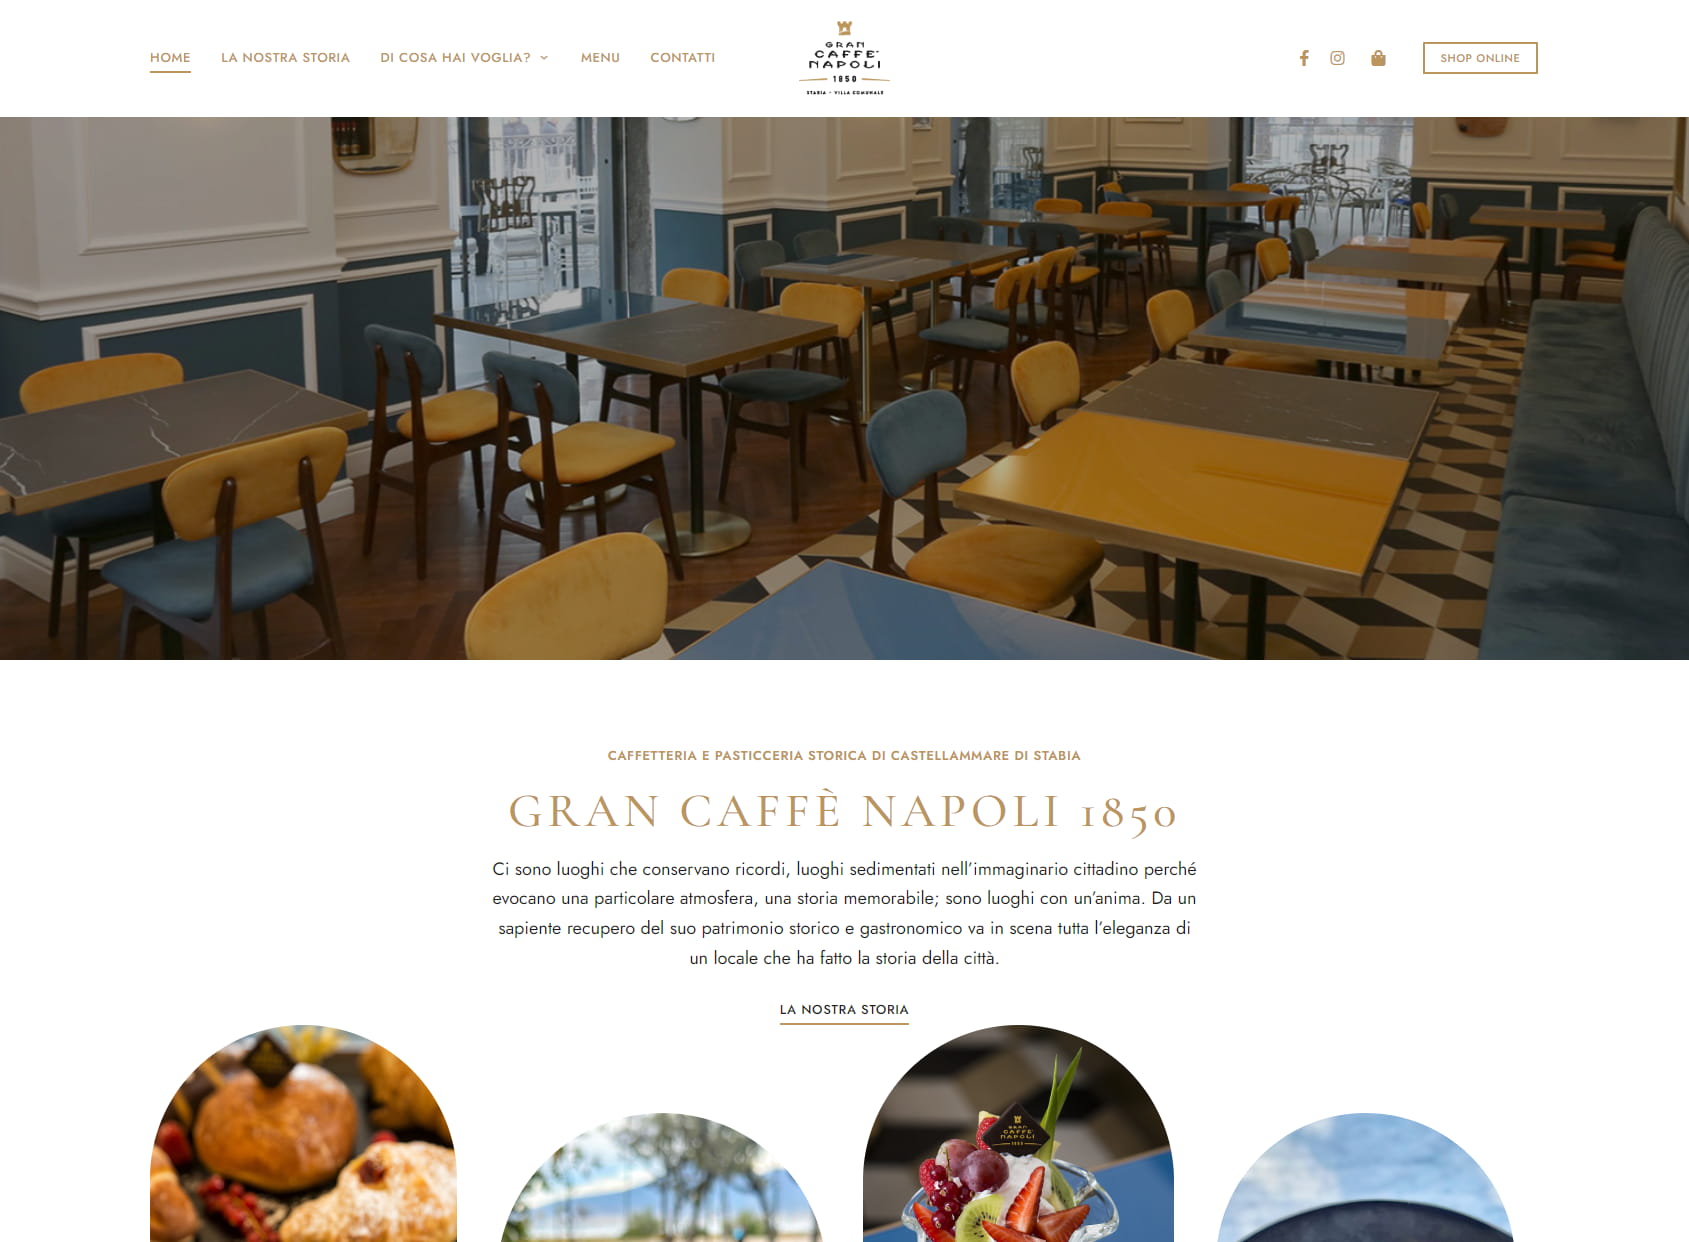 Gran Caffè Napoli 1850